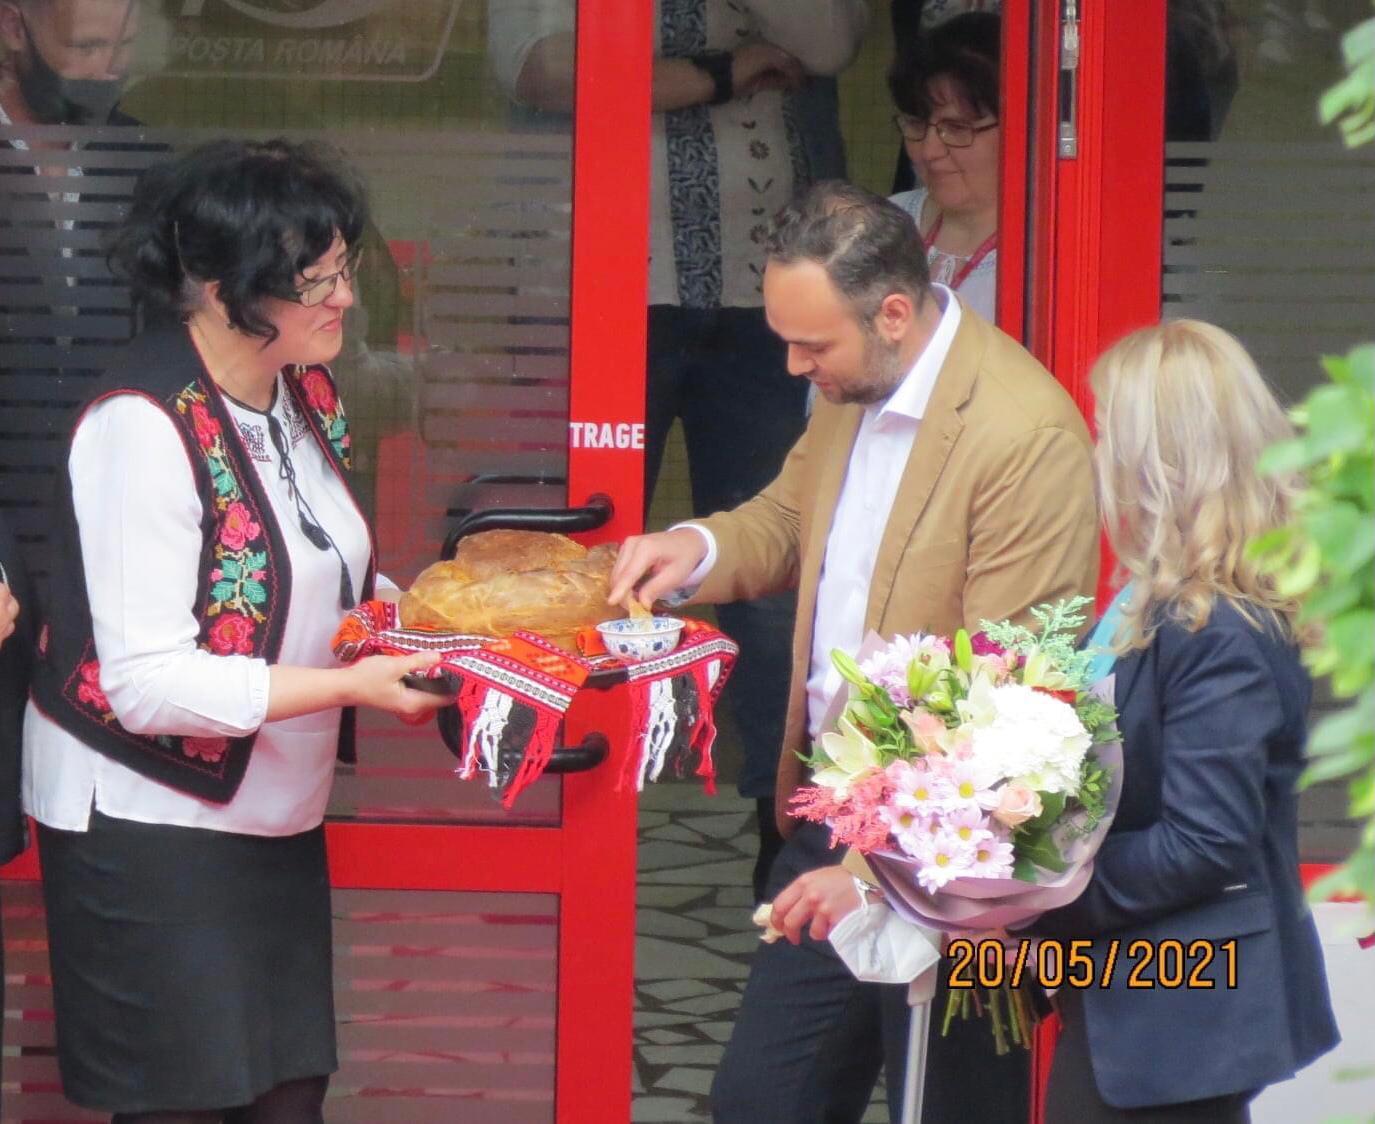 Ceremonie de inauguriare a unui oficiu poștal, în Târgu Mureș